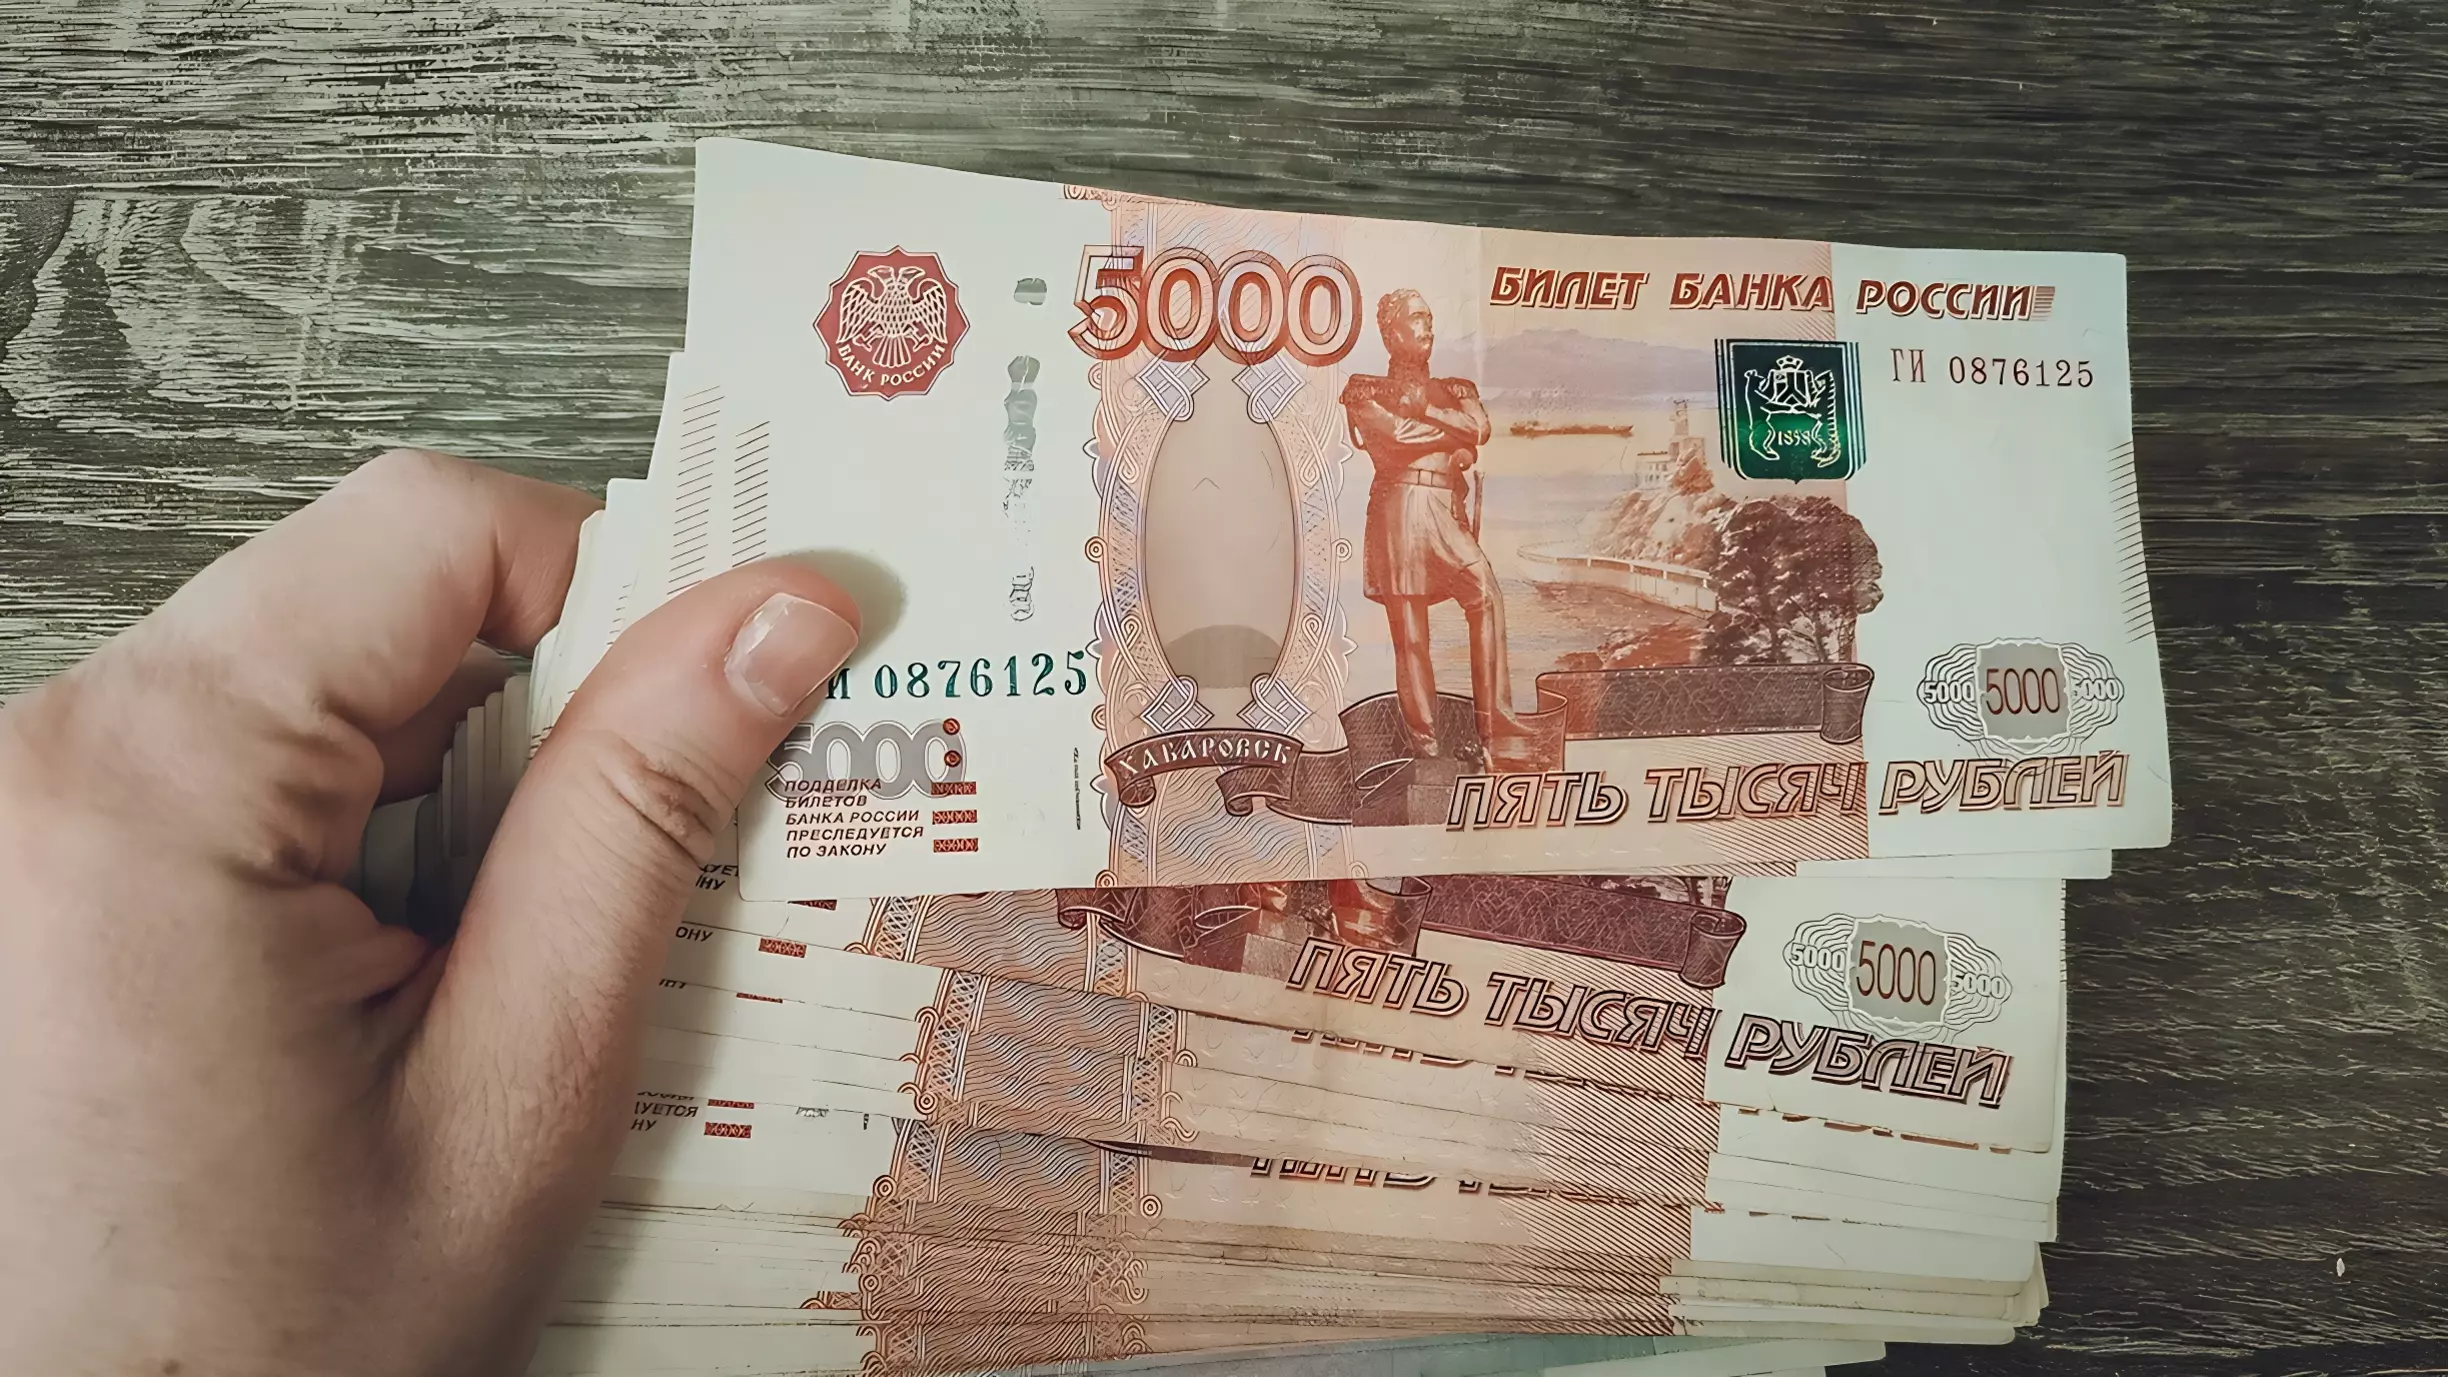 В некоторых вузах талантливым студентам готовы выплачивать стипендию в 50 раз выше базовой — до 100 тысяч рублей в месяц.